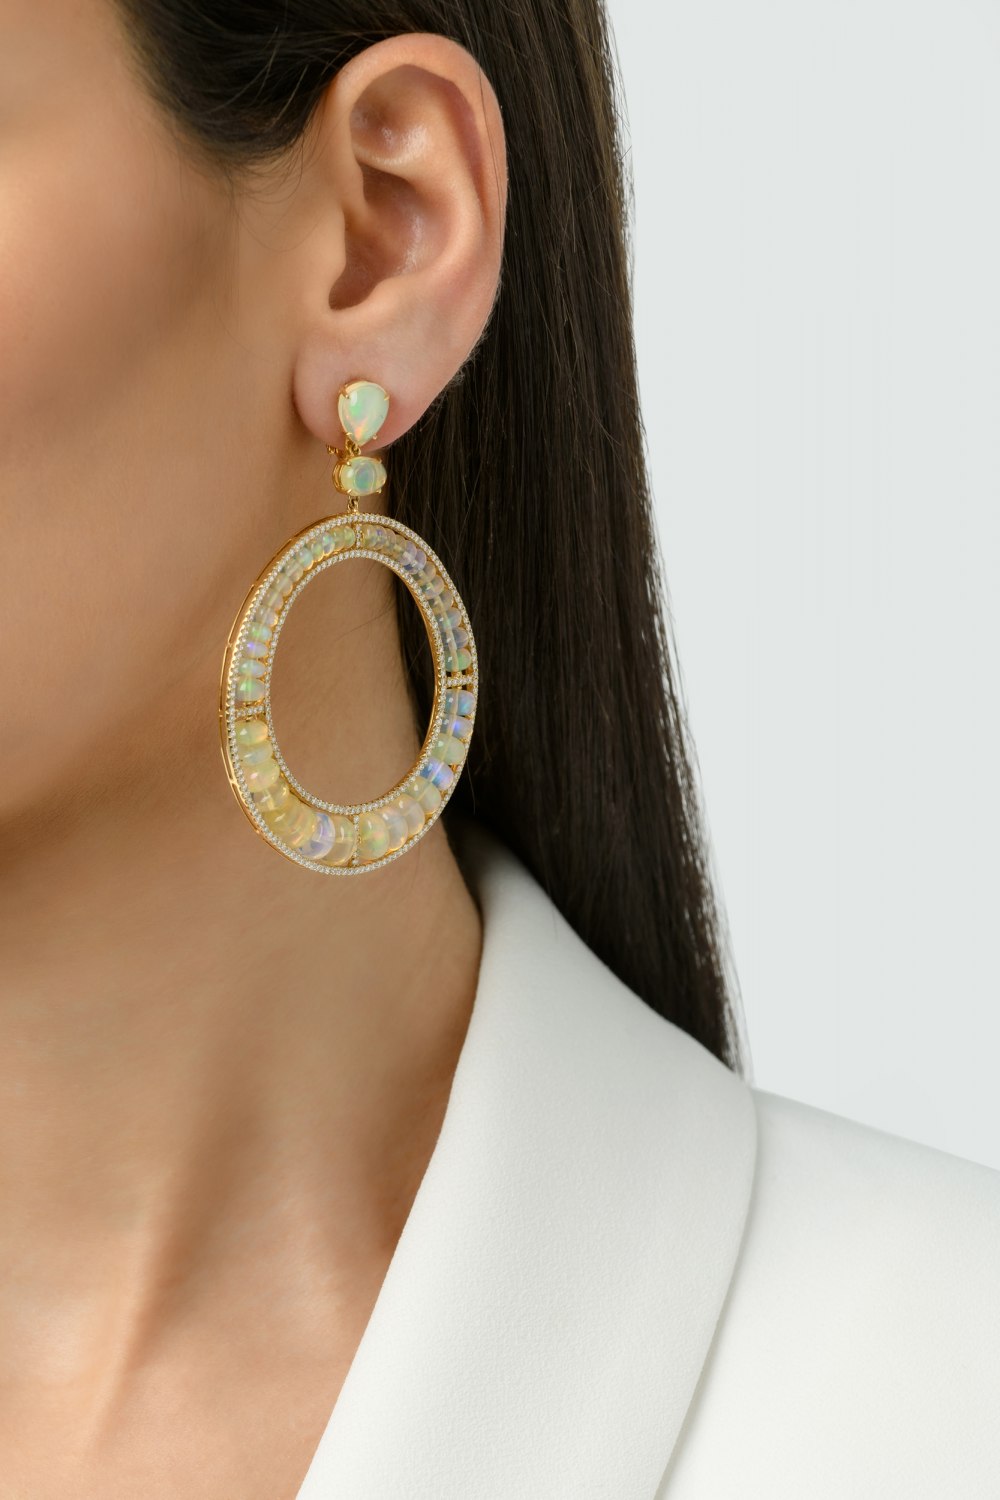 KESSARIS - Ethereal Earrings